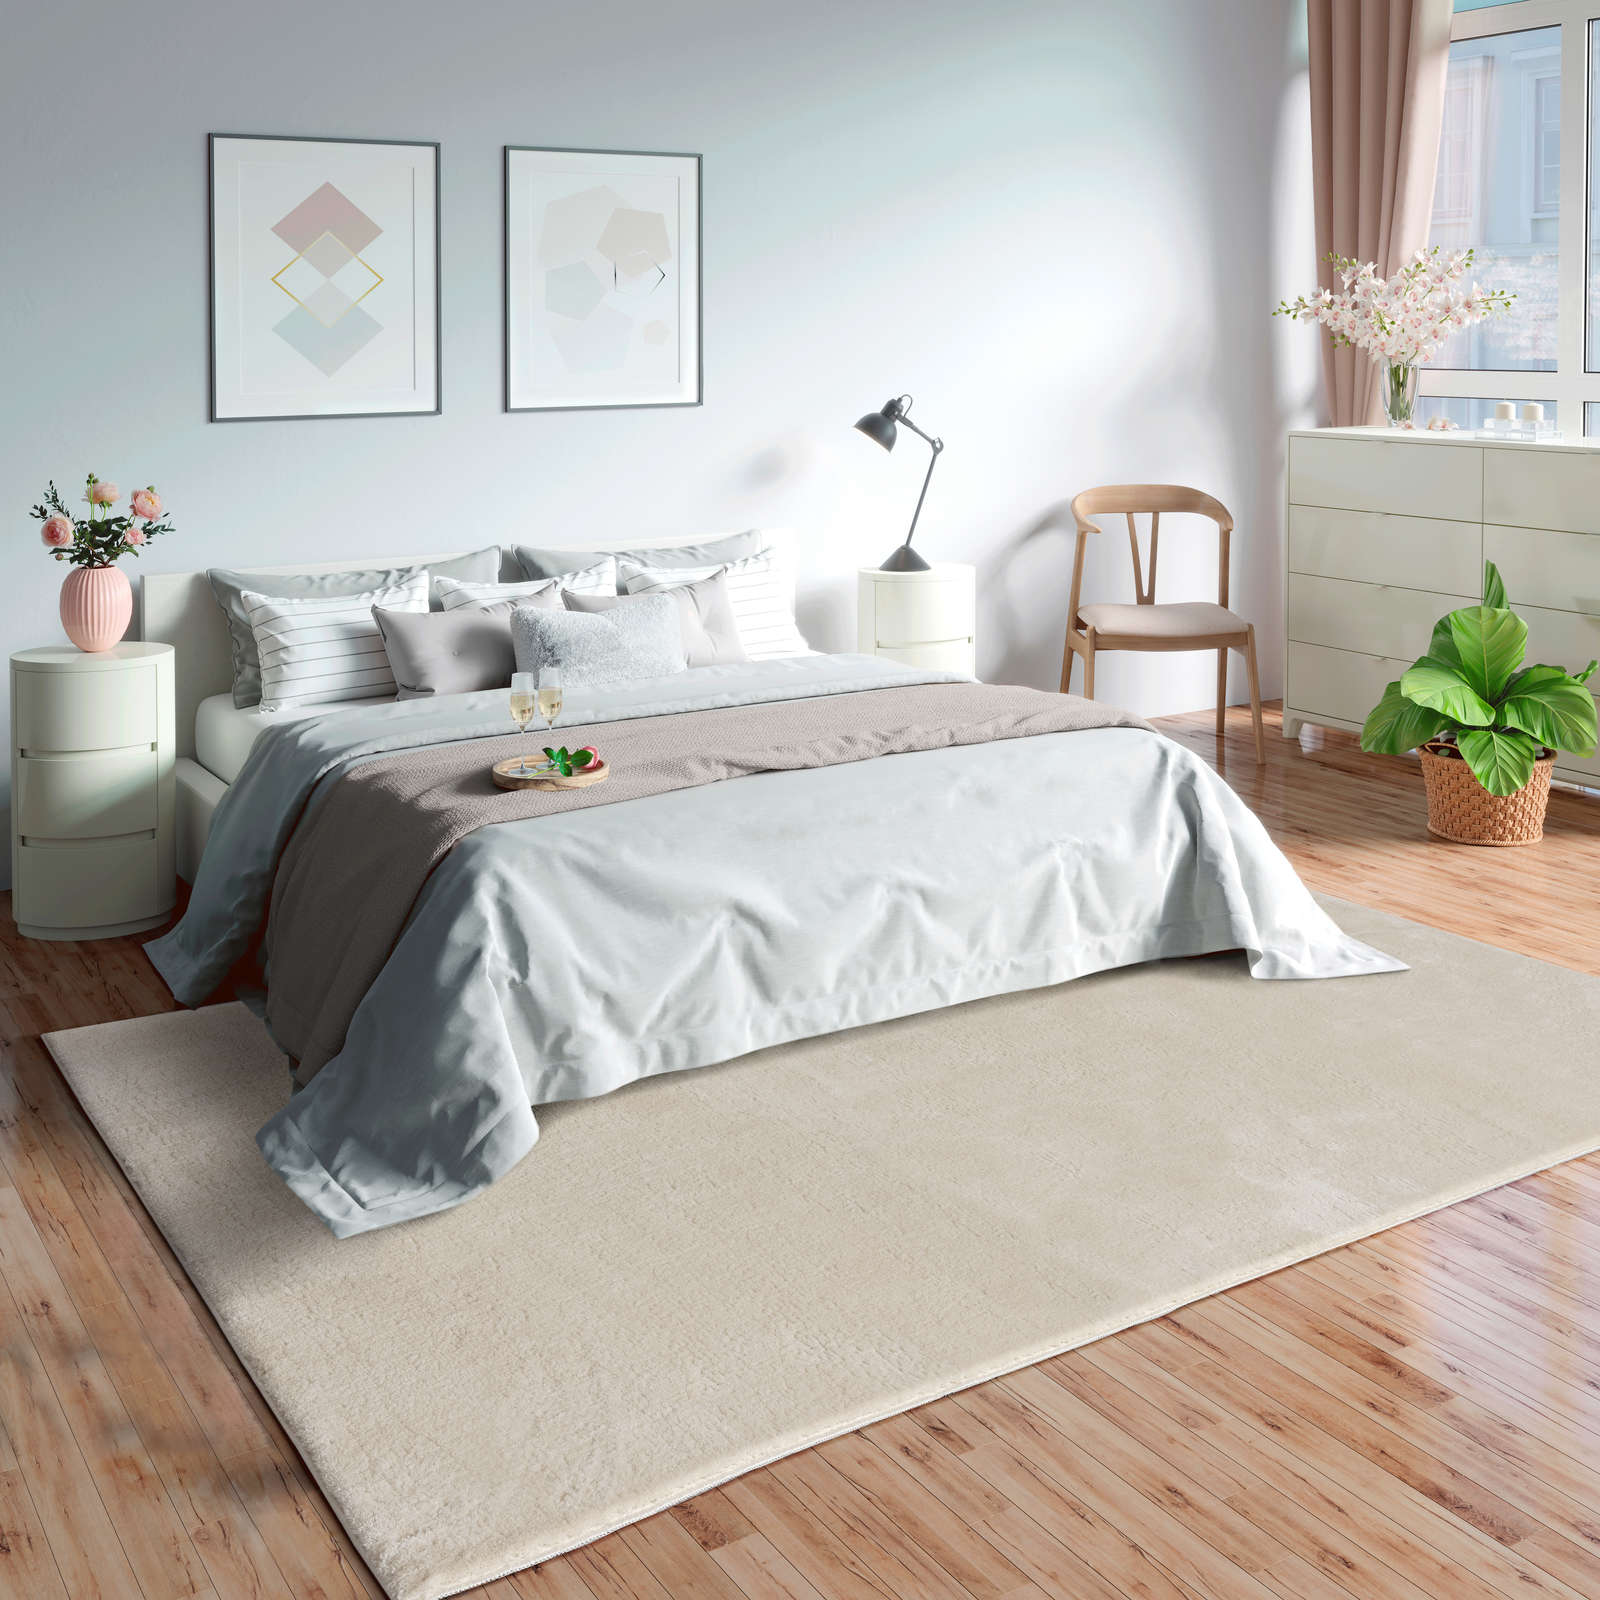             Zacht hoogpolig tapijt in beige - 340 x 240 cm
        